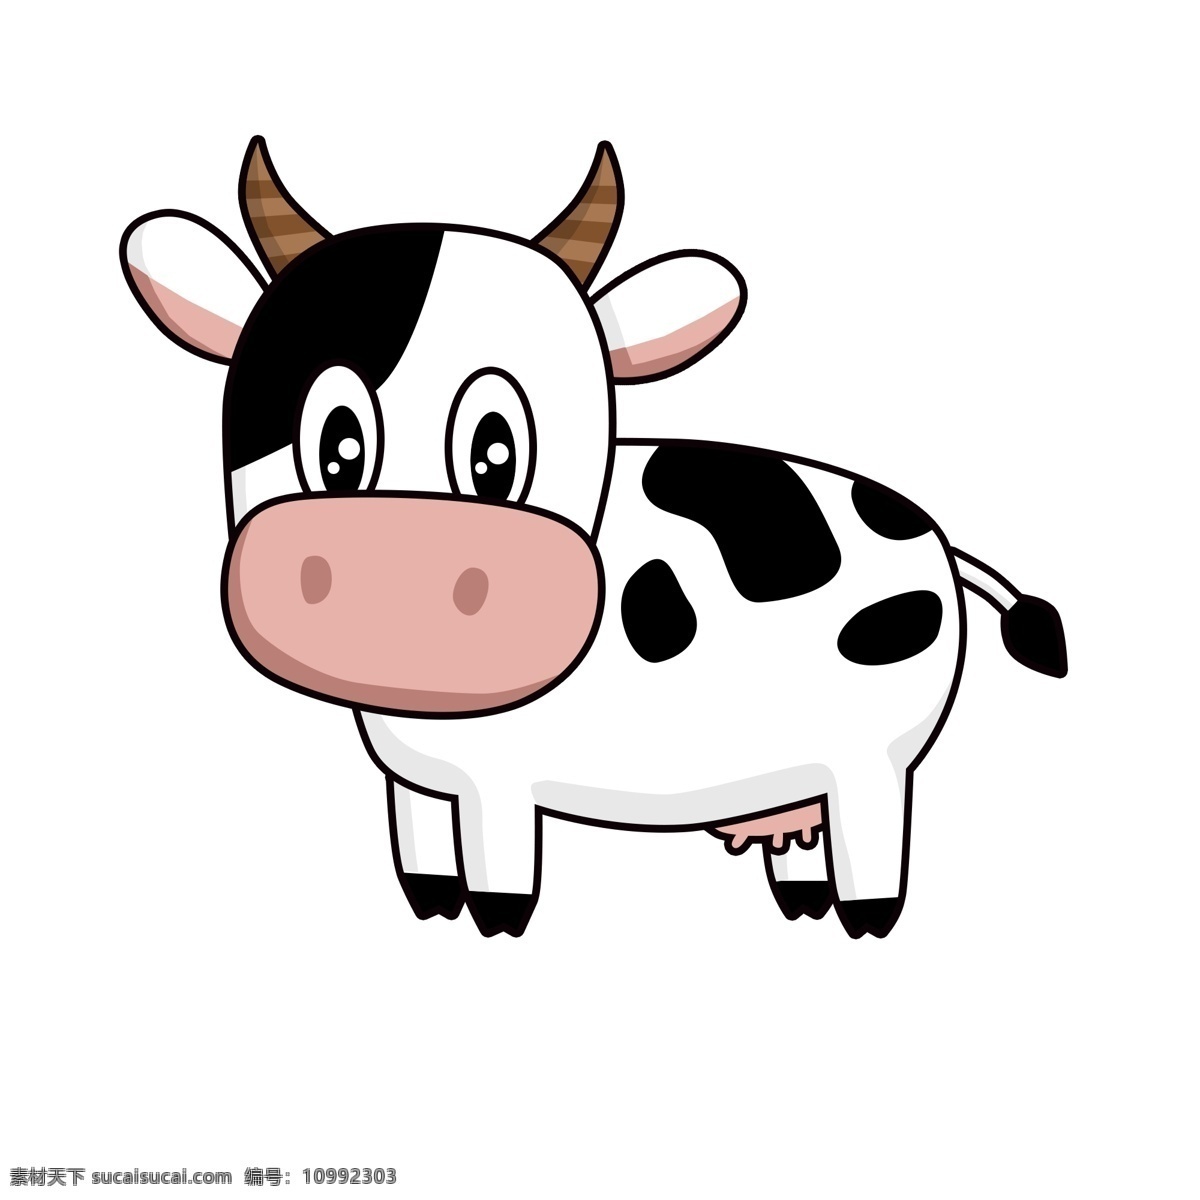 可爱 卡通 奶牛 可爱奶牛 卡通奶牛 粉色奶牛 卡通动物 淘宝界面设计